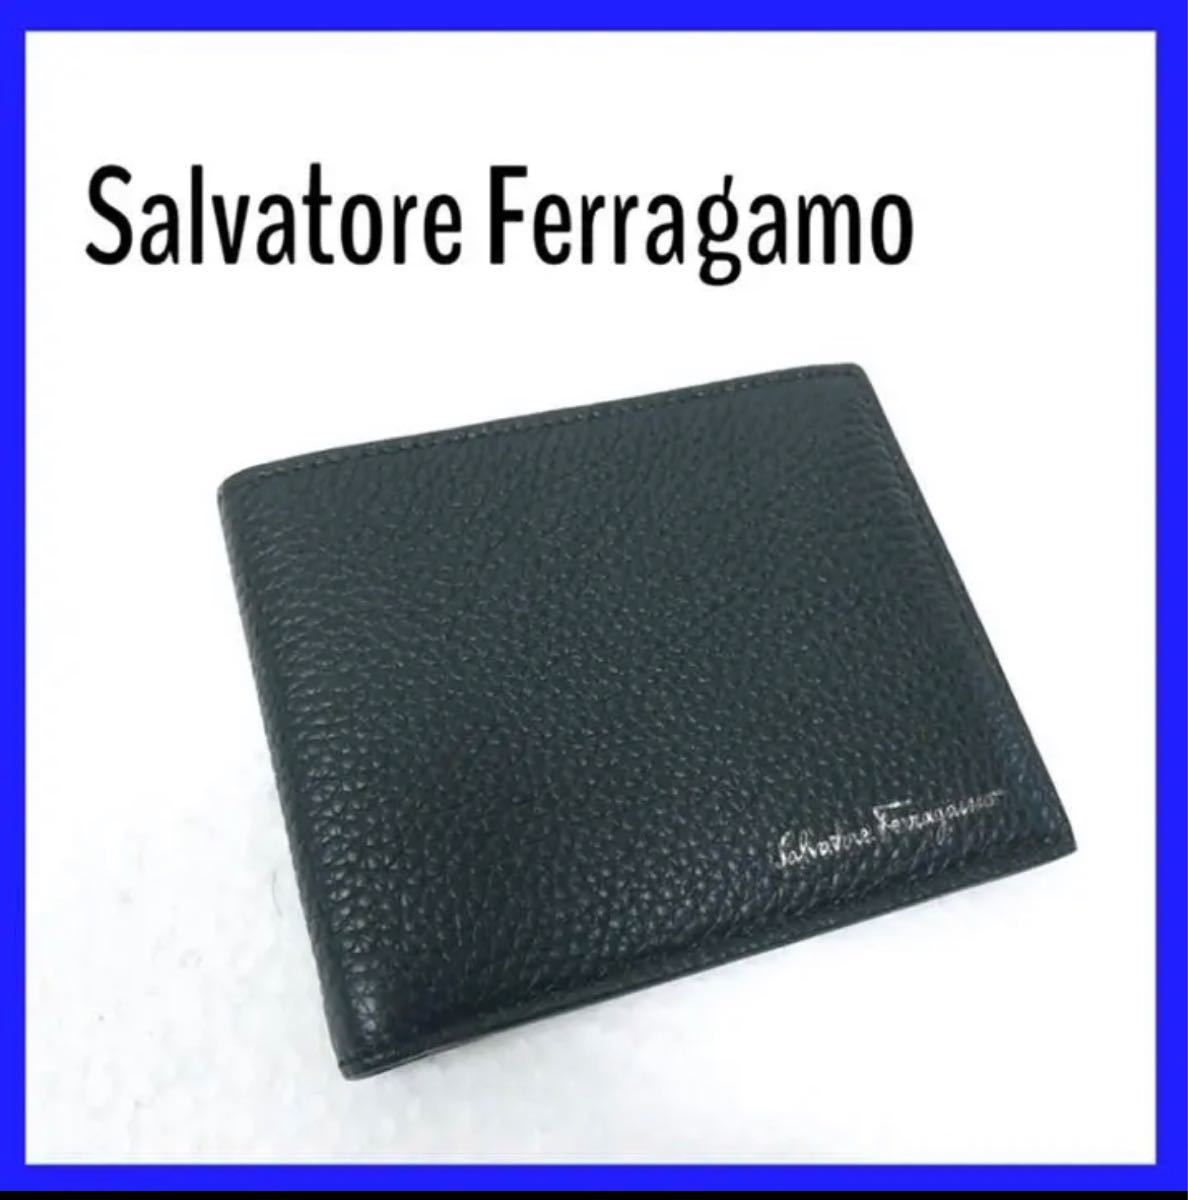 【本物志向の紳士にオススメ】Ferragamo フェラガモレザー 折財布 札入れ